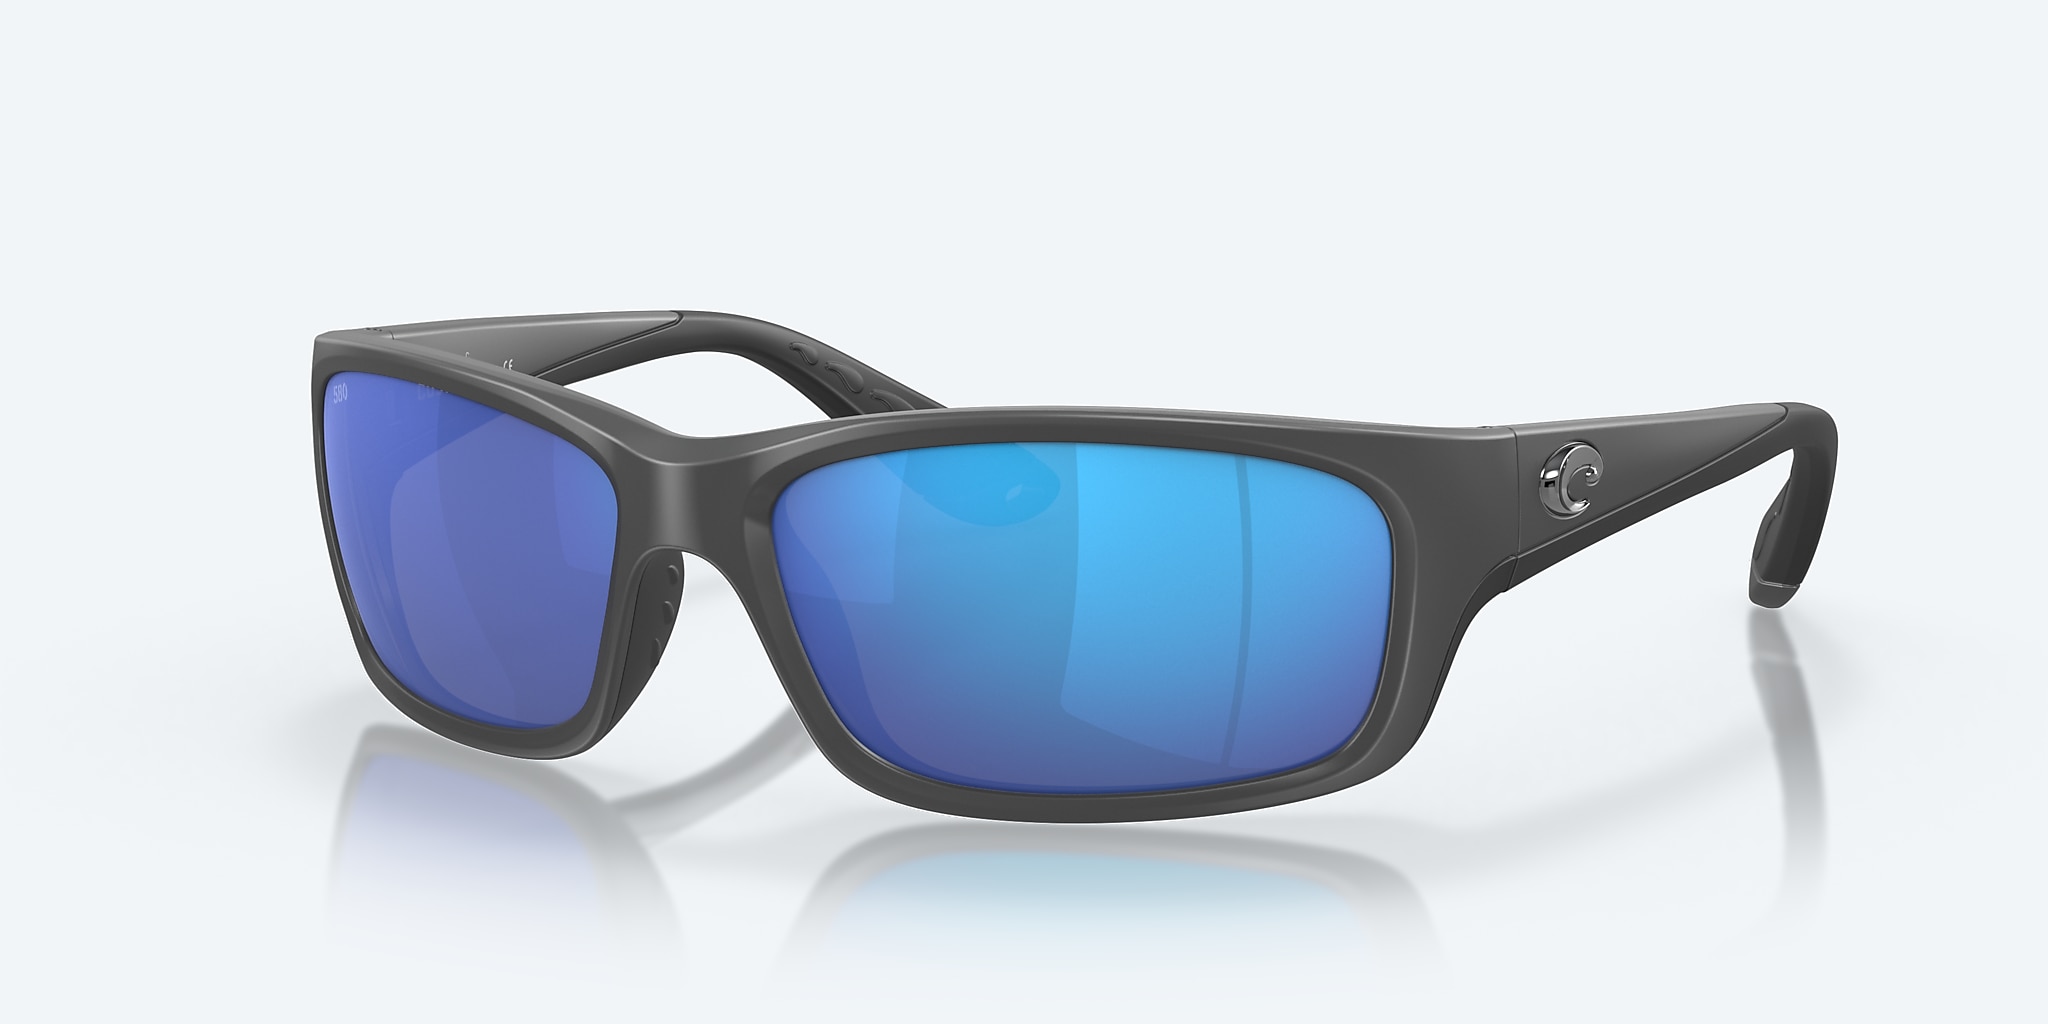 Jose Polarized Sunglasses in Blue Mirror